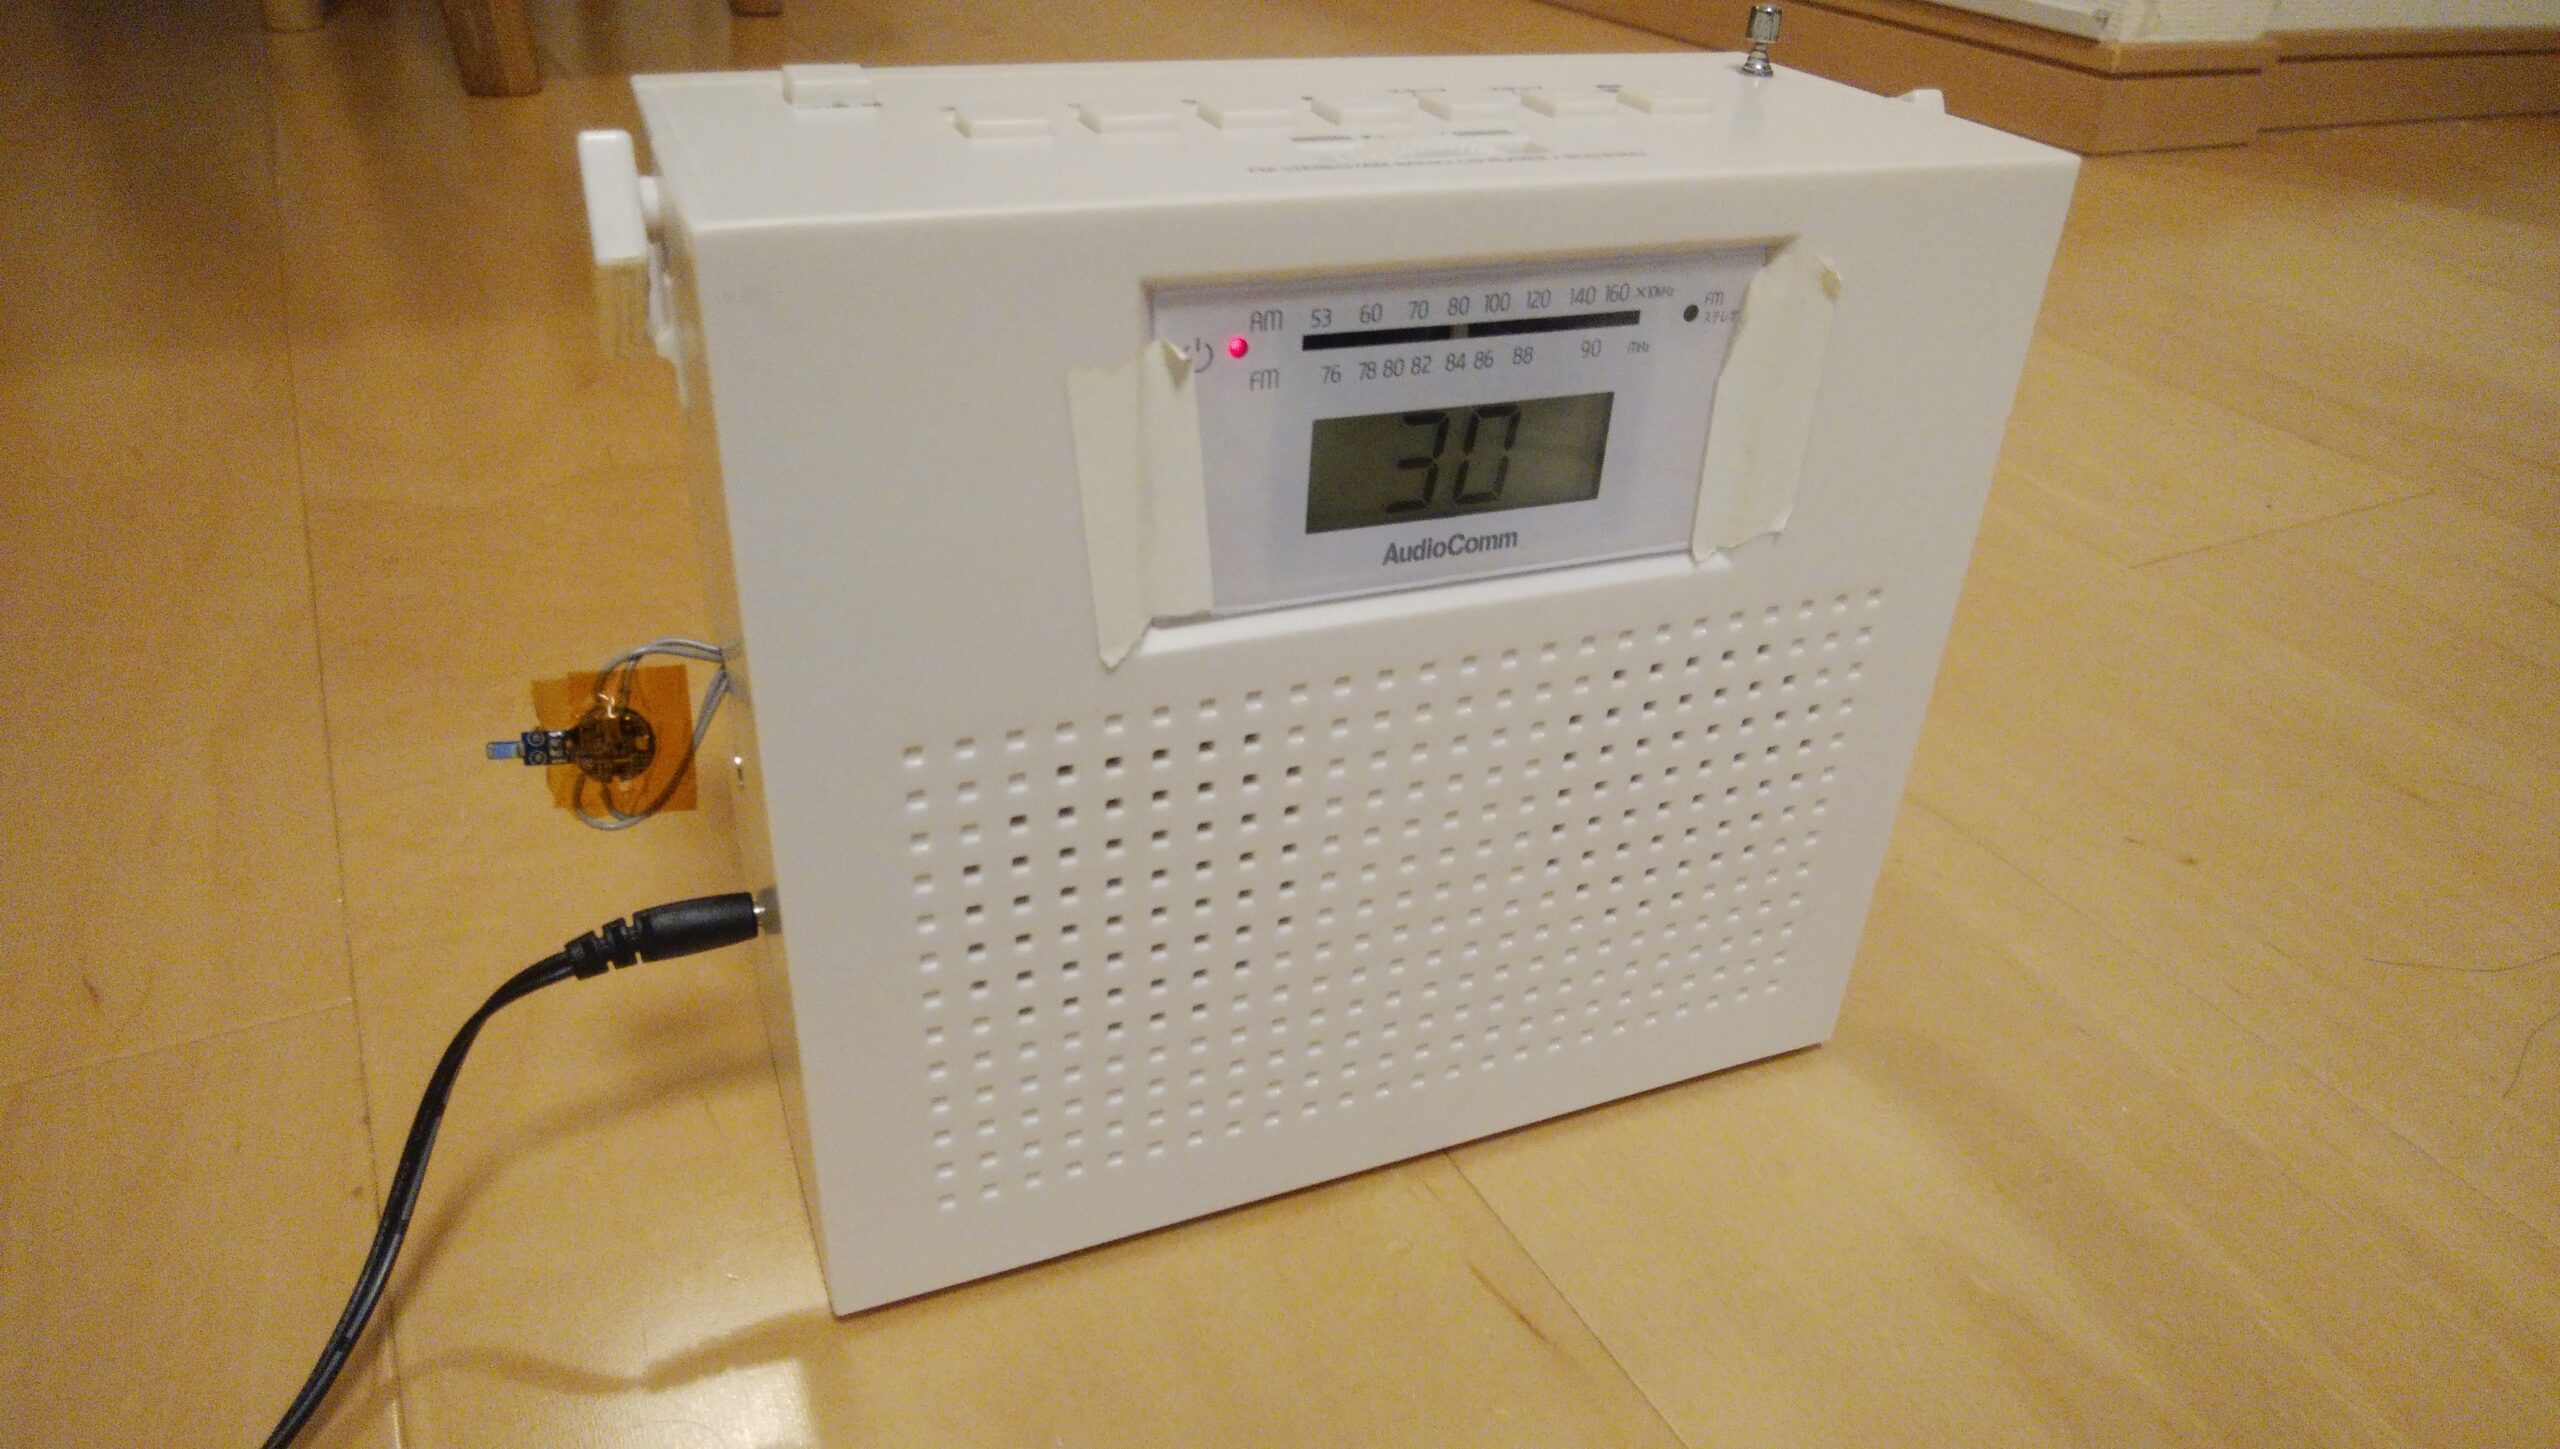 Diy スピーカーのワイヤレス化 不要になったbluetoothイヤホンでラジオを改造 電検三種攻略ブログ